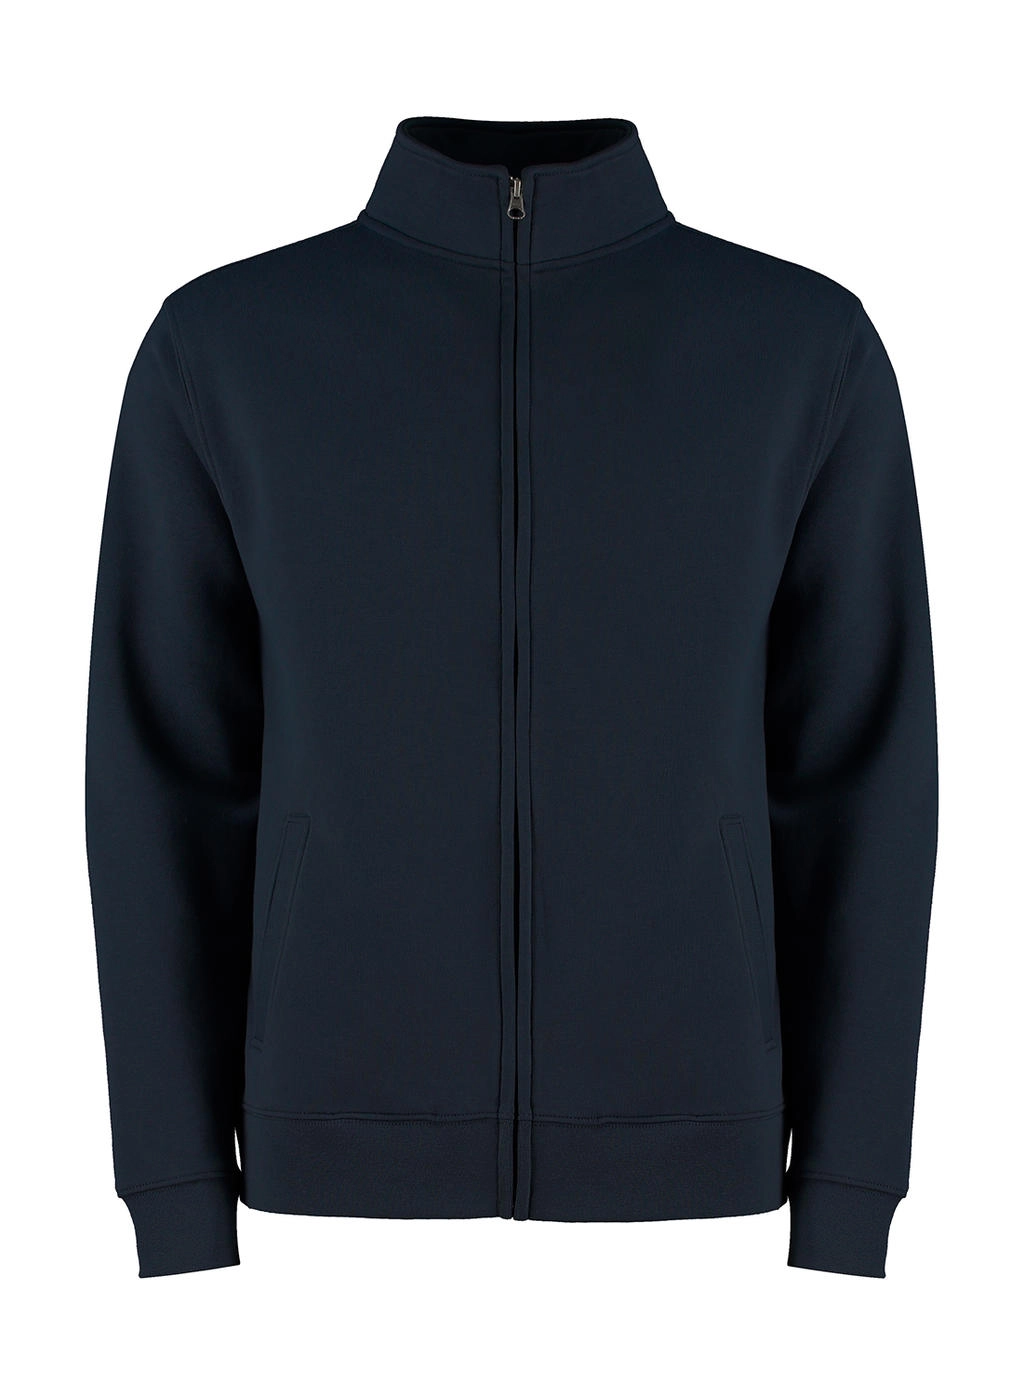 Regular Fit Zipped Sweatshirt zum Besticken und Bedrucken in der Farbe Navy mit Ihren Logo, Schriftzug oder Motiv.